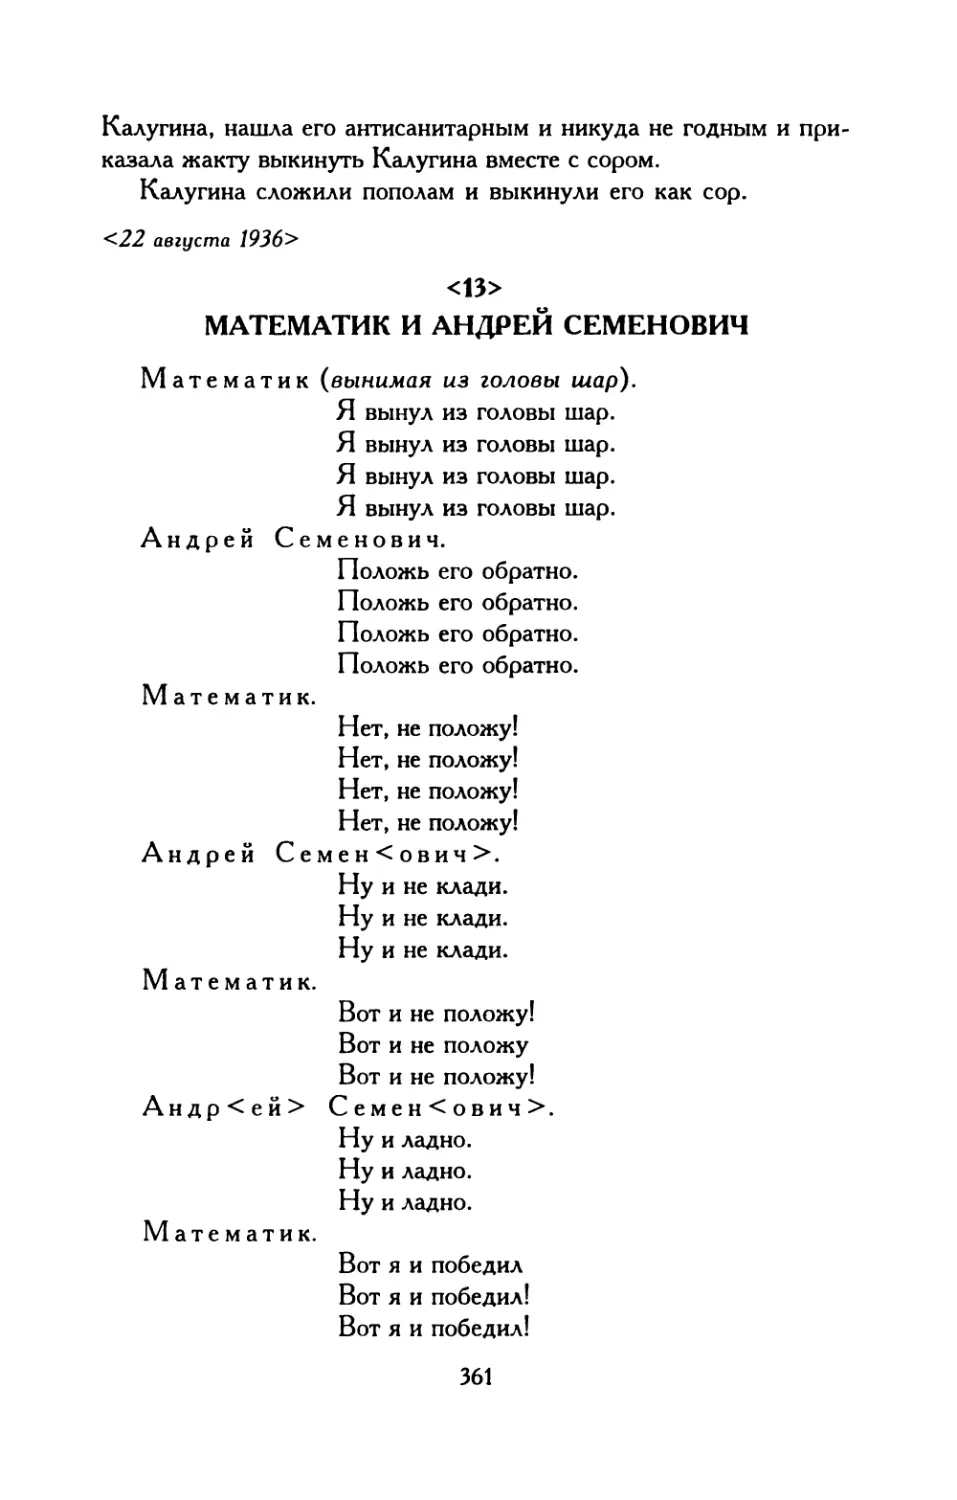 <13>. Математик и Андрей Семенович